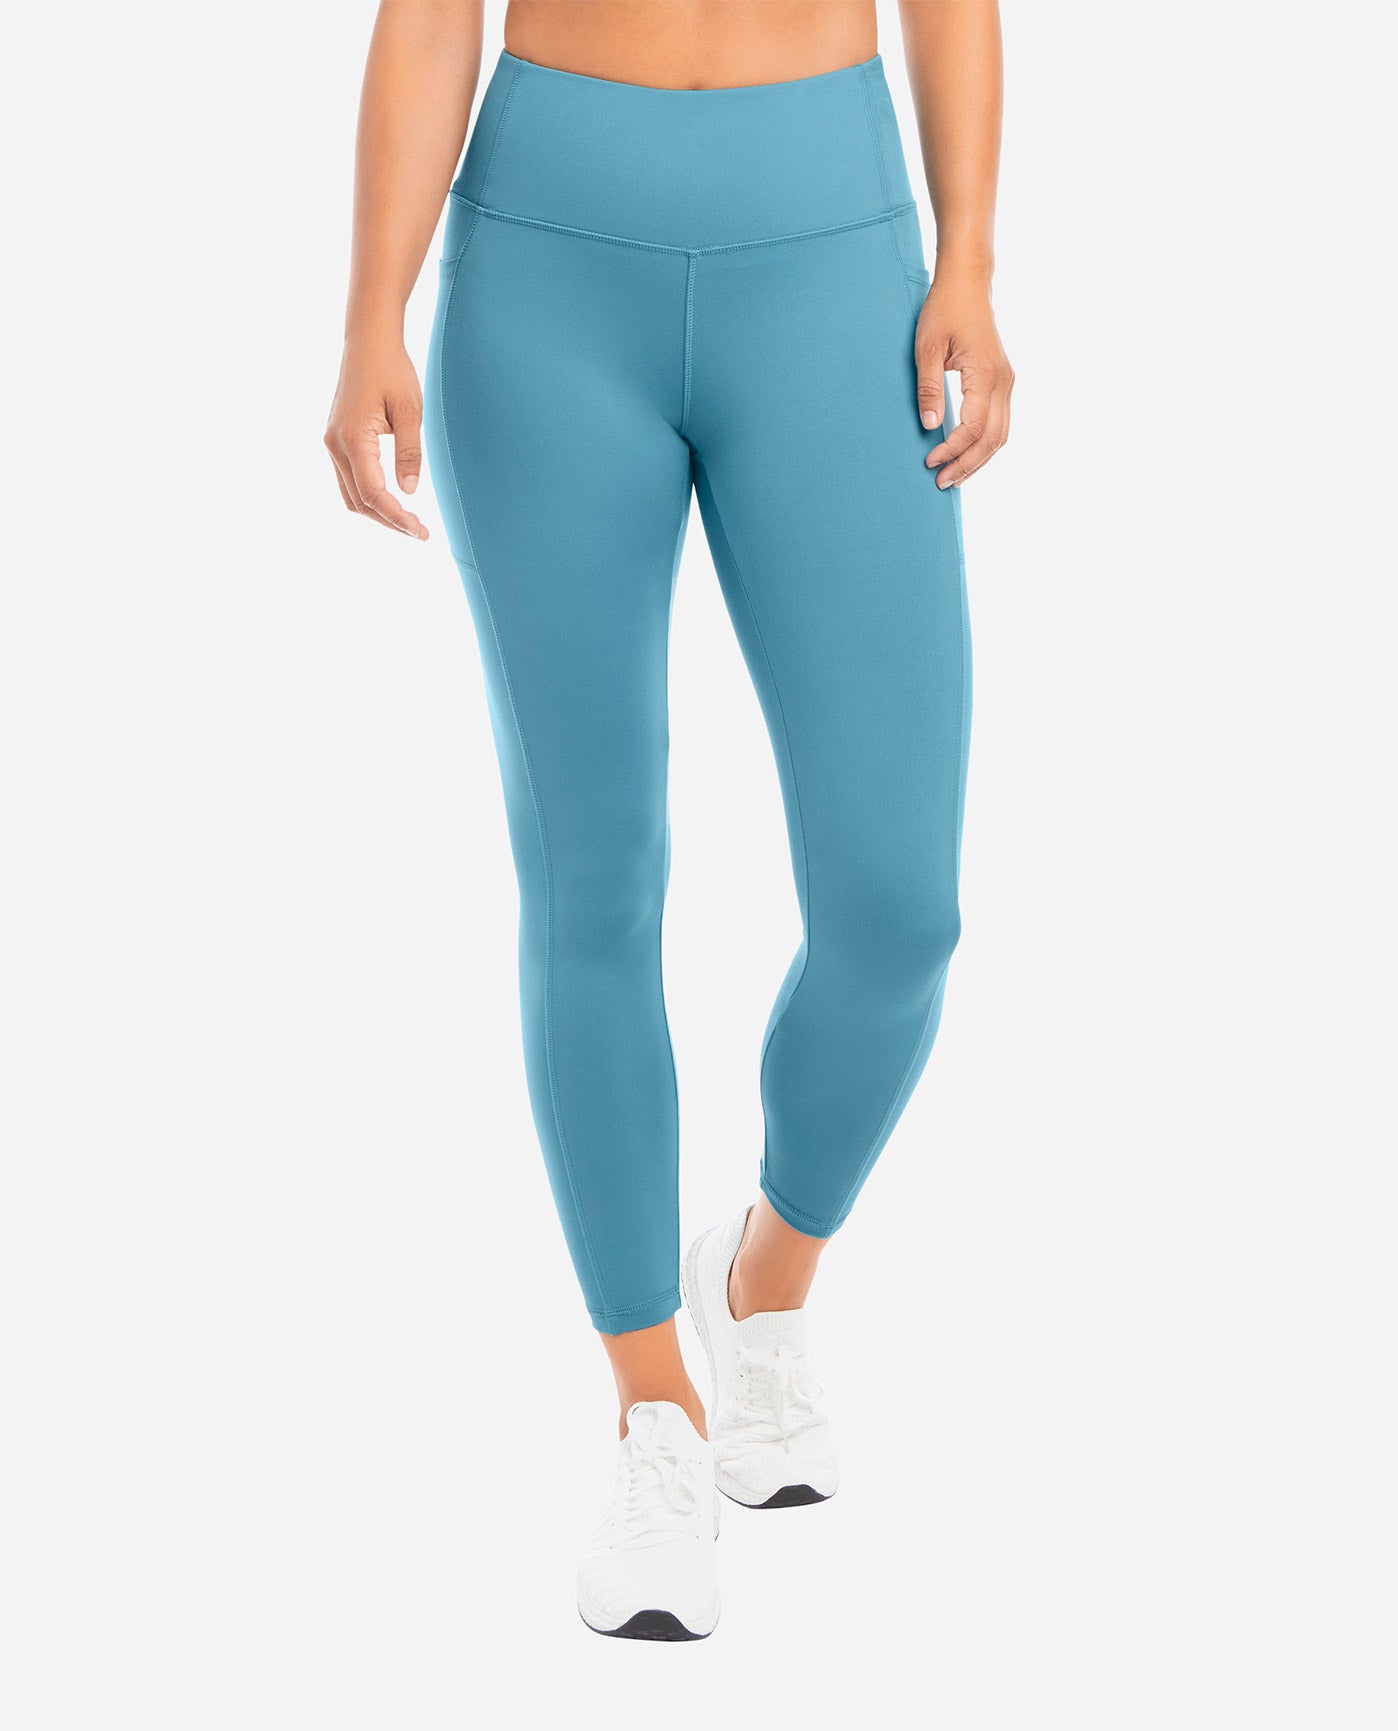 Buy Danskin women 25 inch inseam solid 7 8 leggings teal blue Online